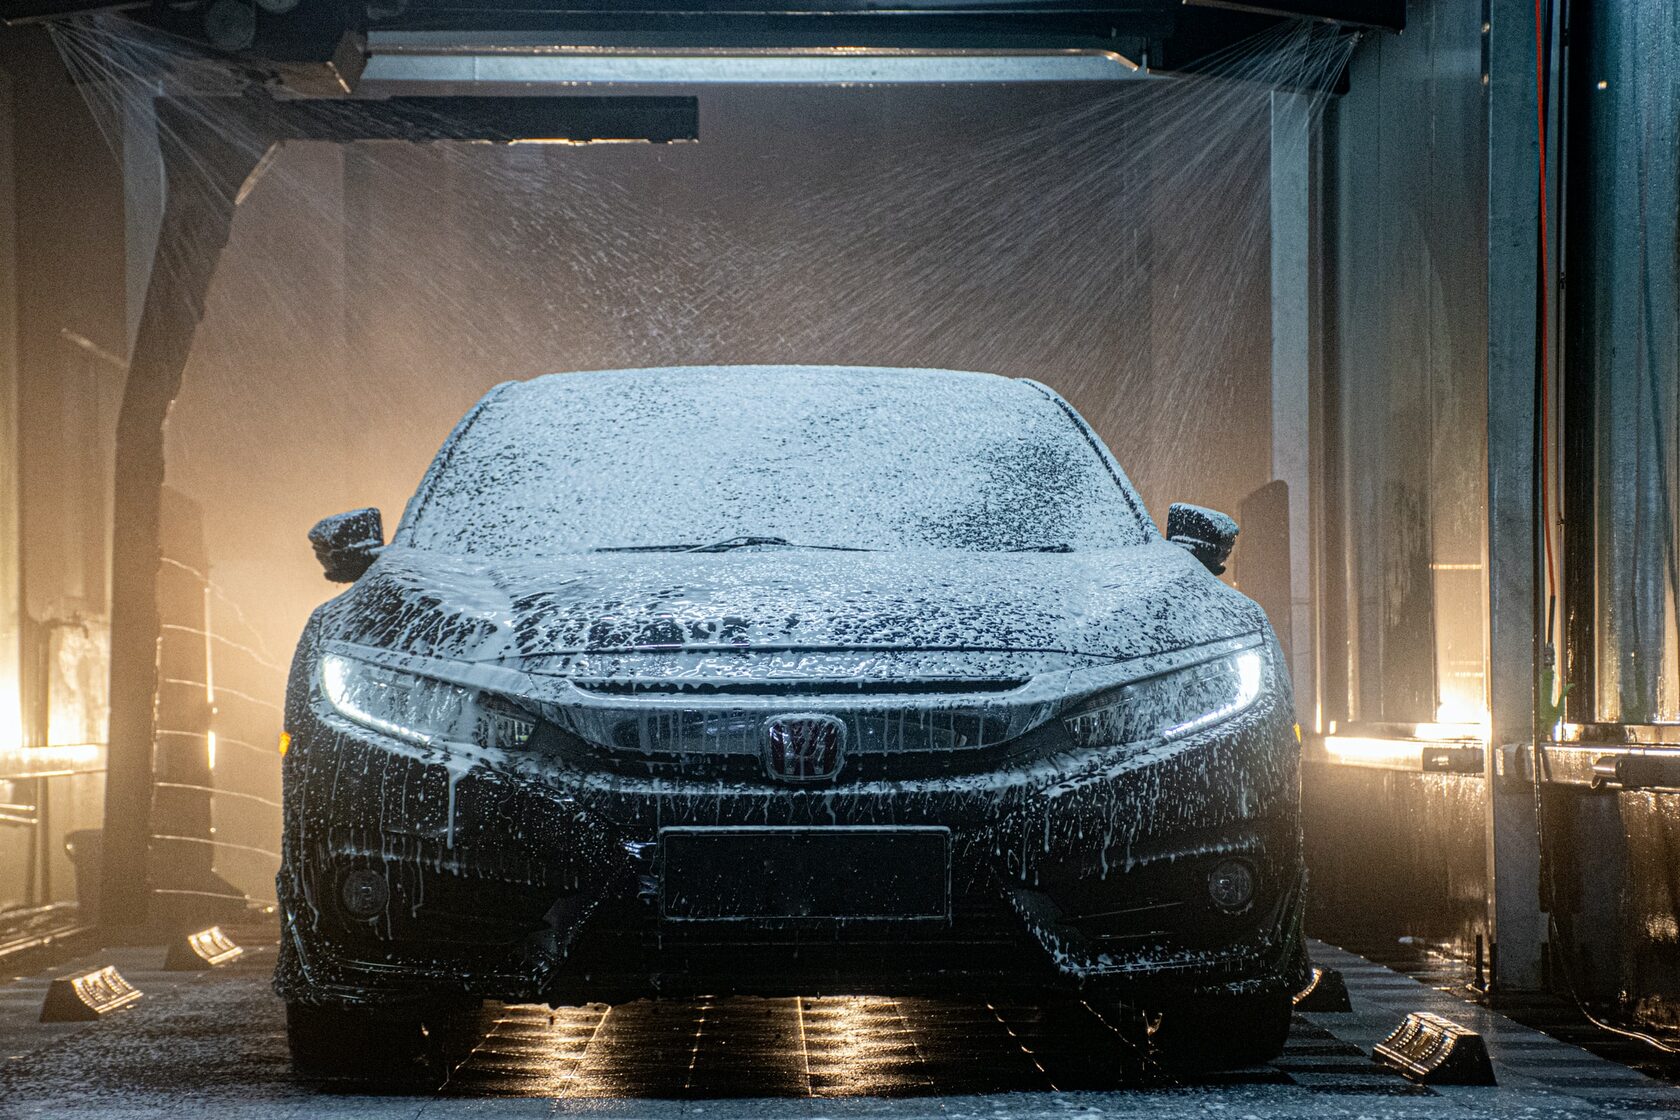 Can Tesla Go Thru Car Wash